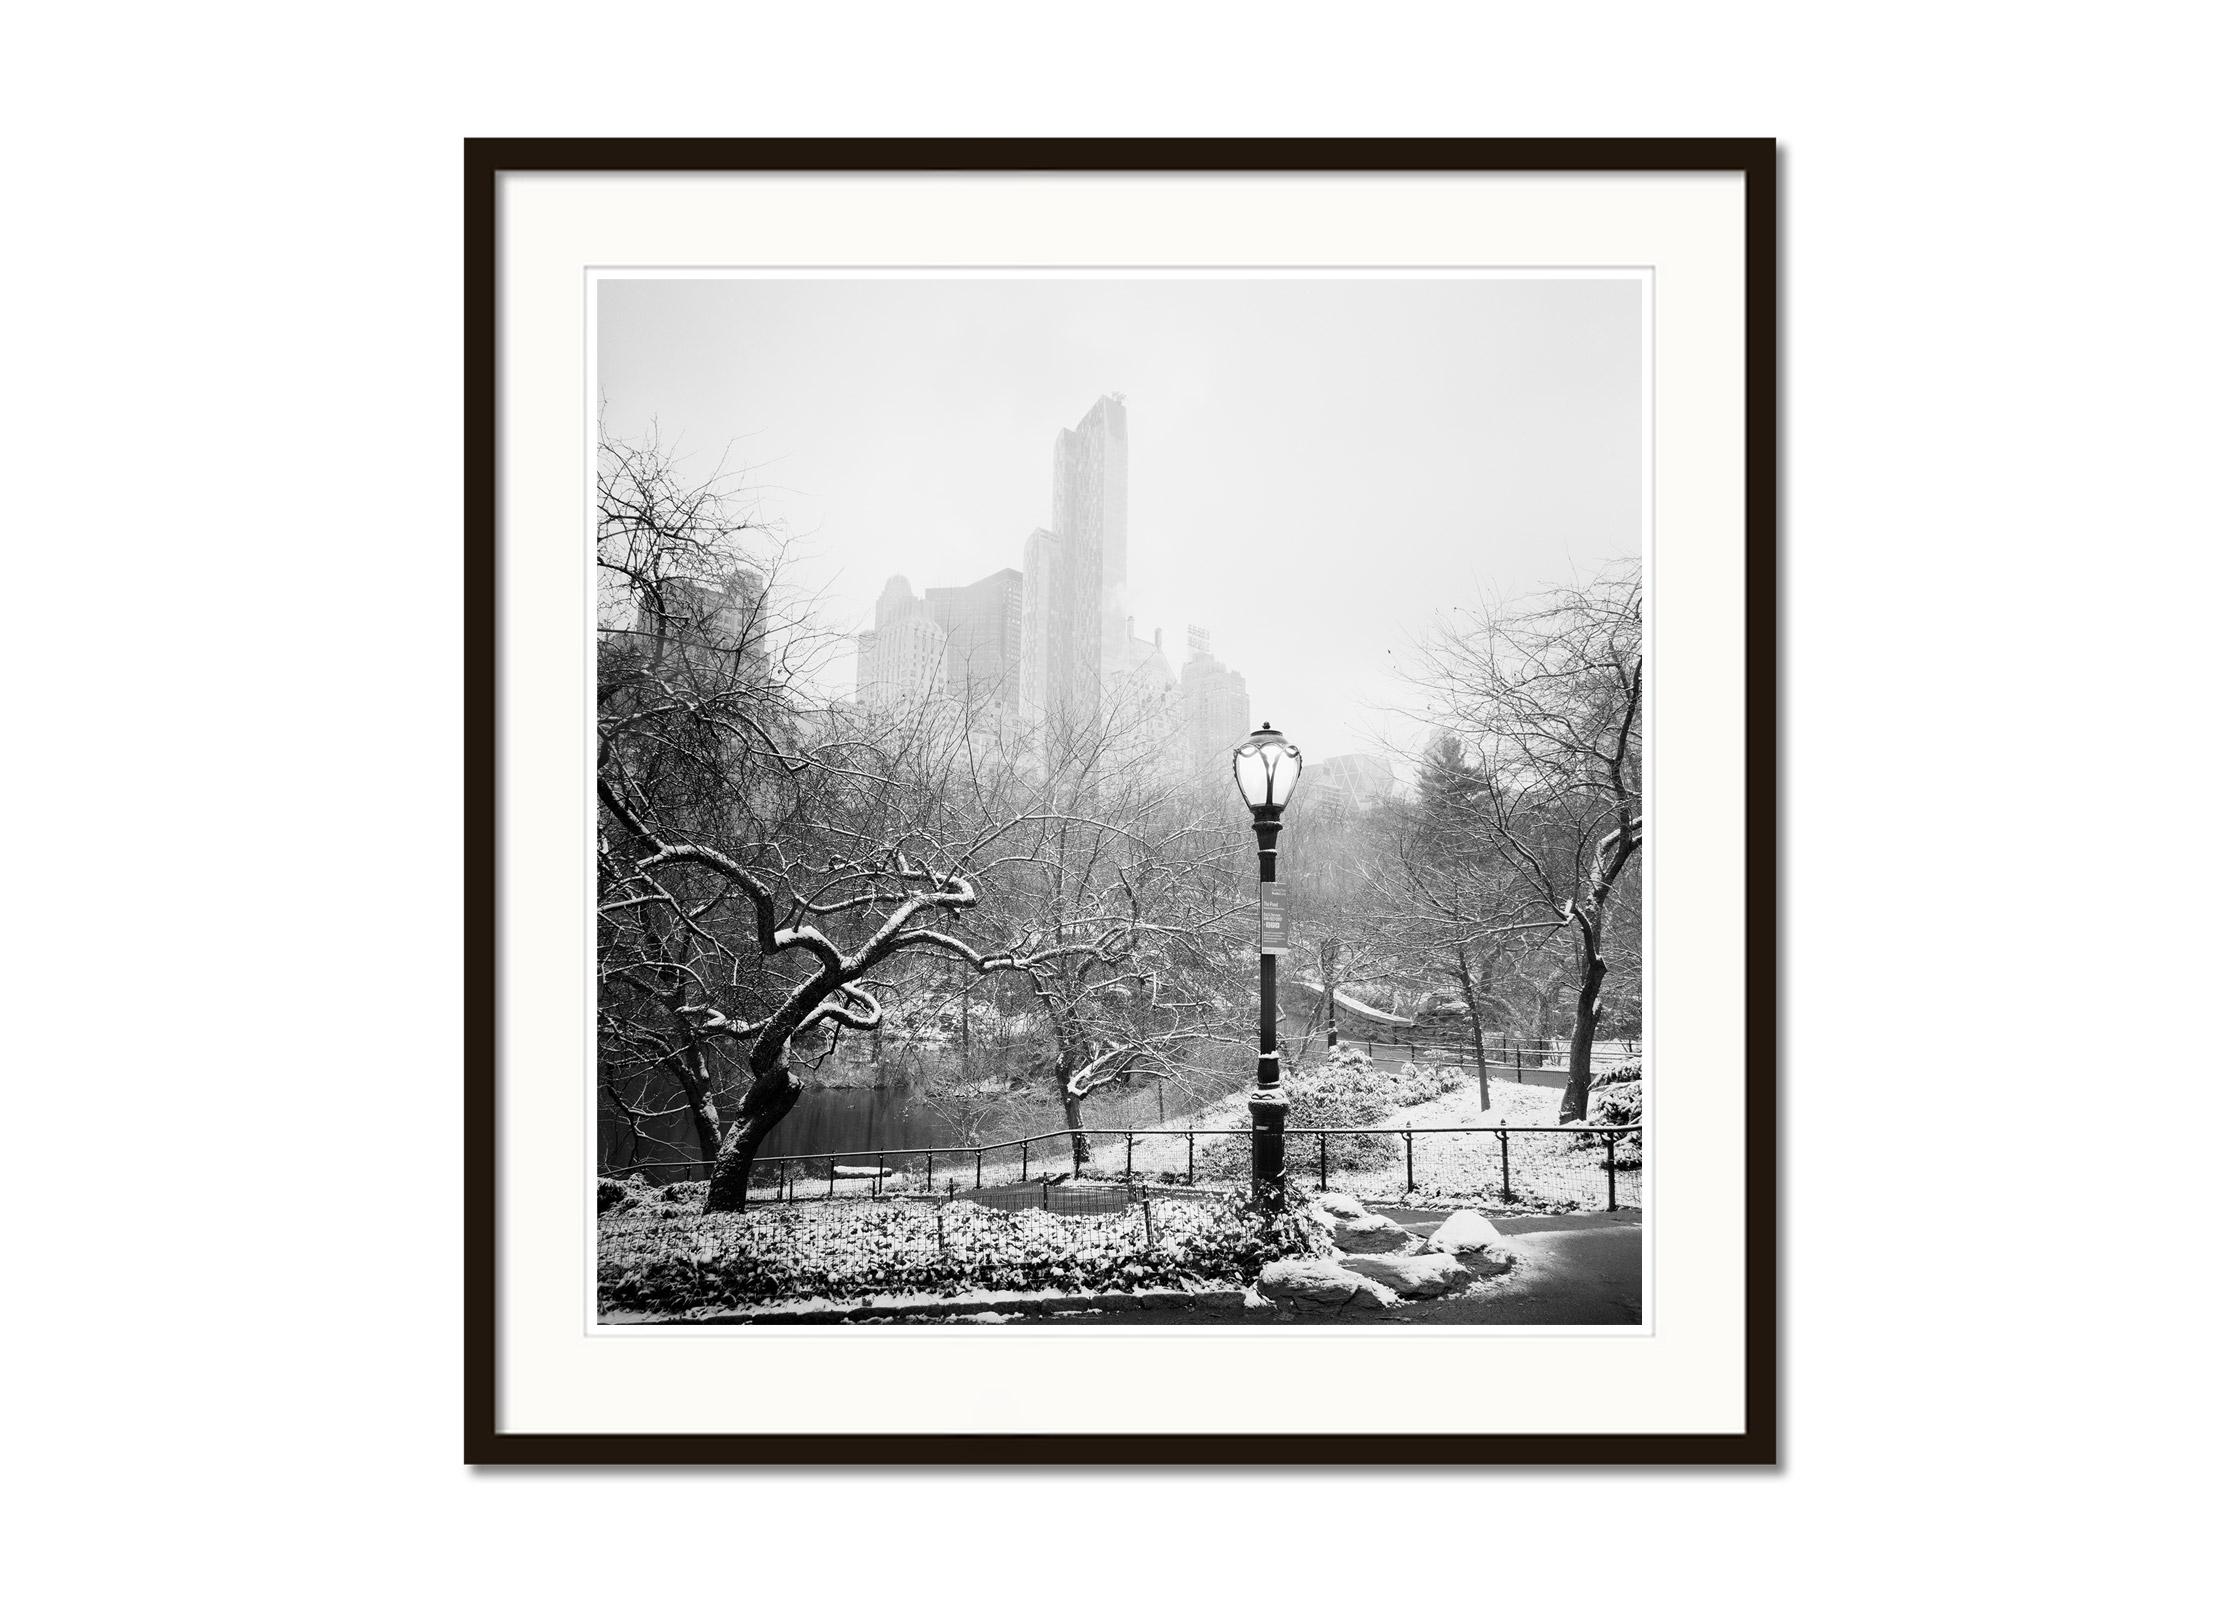 Schnee bedeckter Central Park, New York City, Schwarz-Weiß-Fotografie, Landschaft (Grau), Black and White Photograph, von Gerald Berghammer